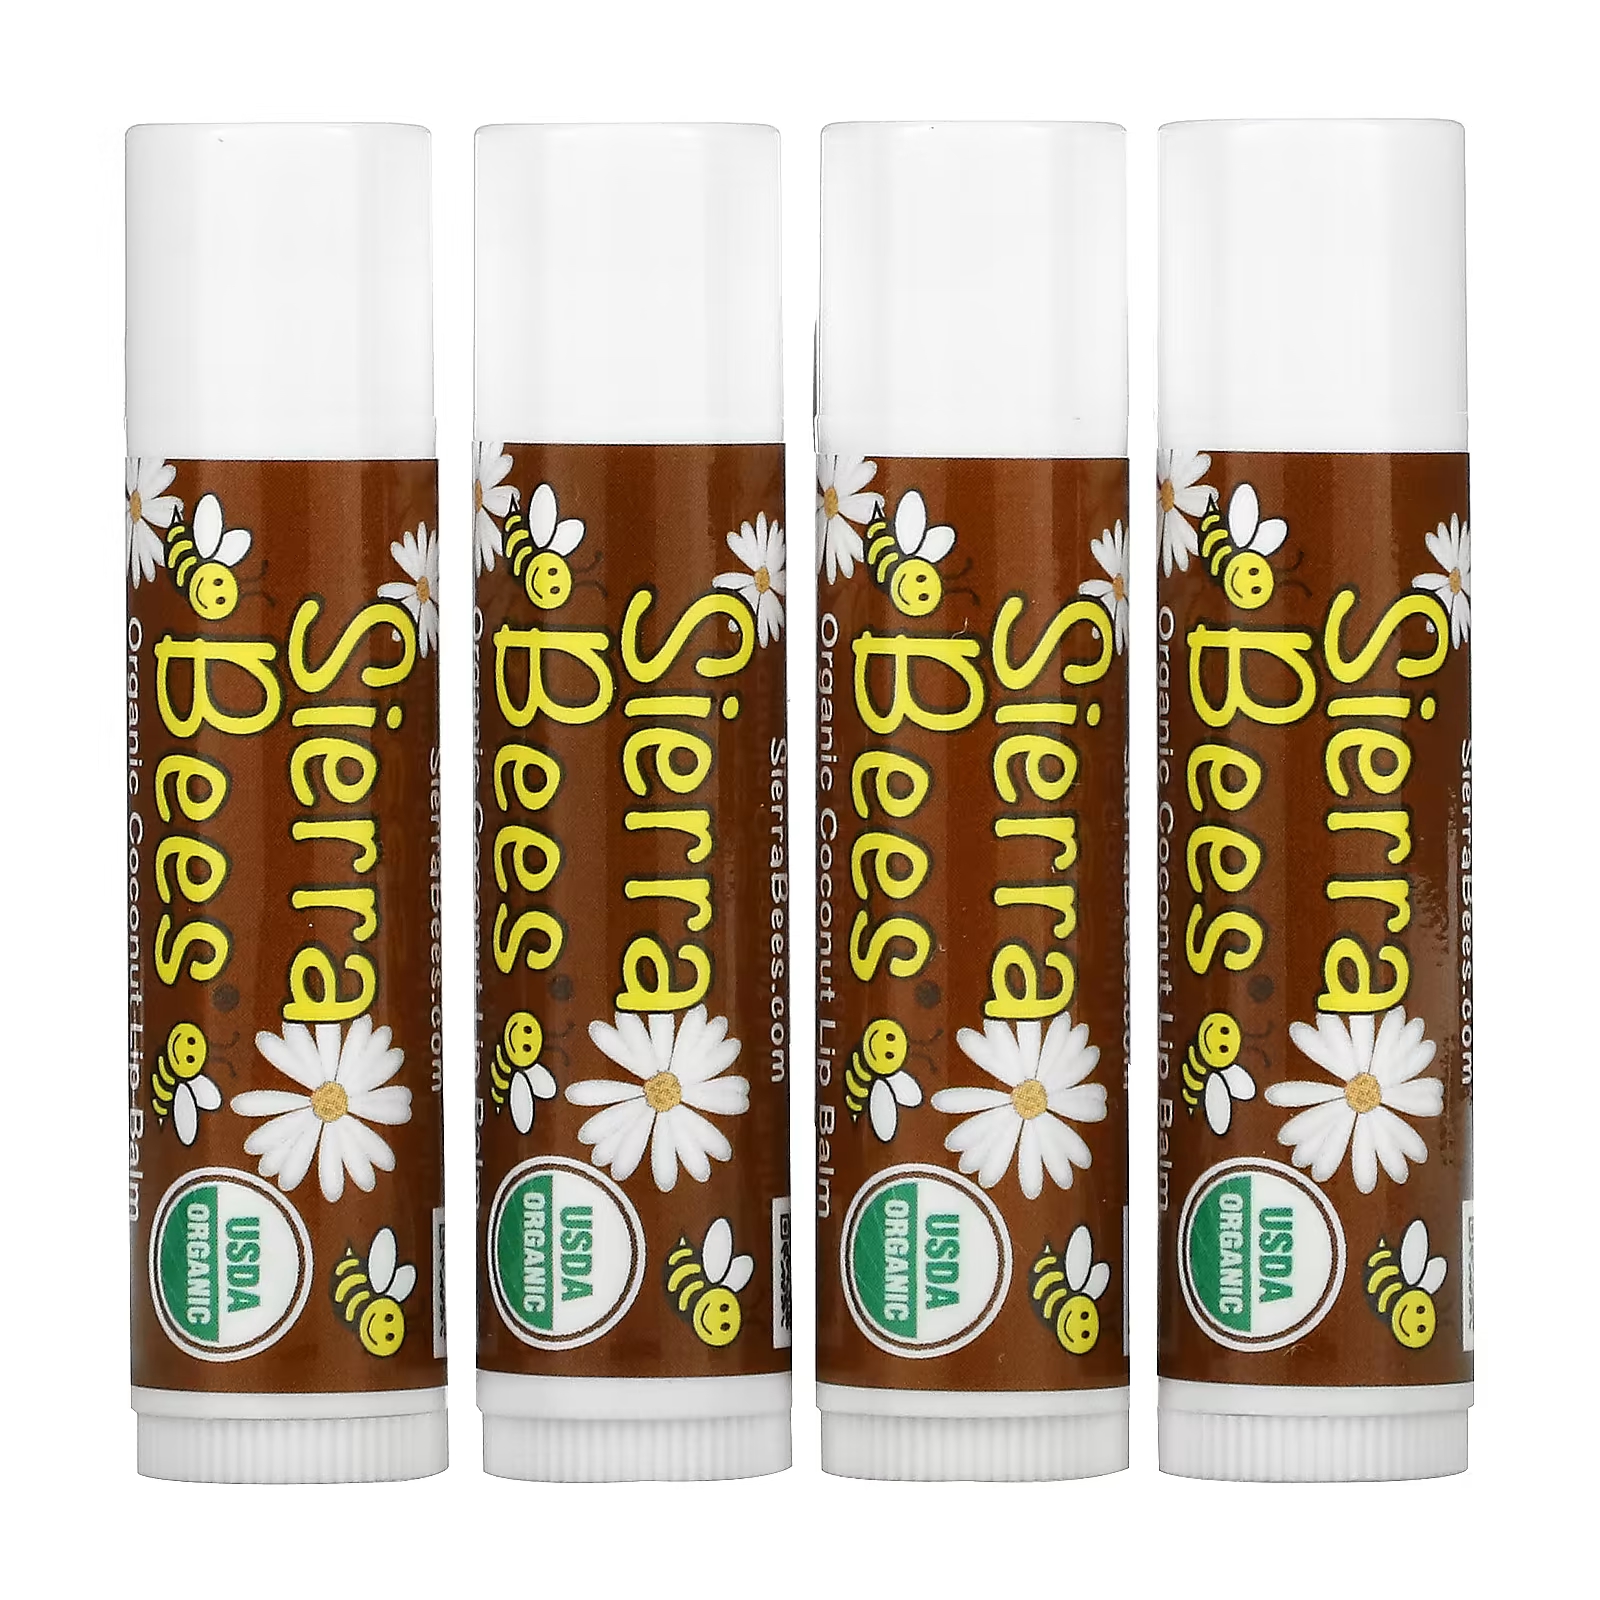 Органические бальзамы для губ Sierra Bees кокос, 4 упаковки по 4,25 г органические бальзамы для губ sierra bees с маслом какао 4 упаковки по 4 25 г